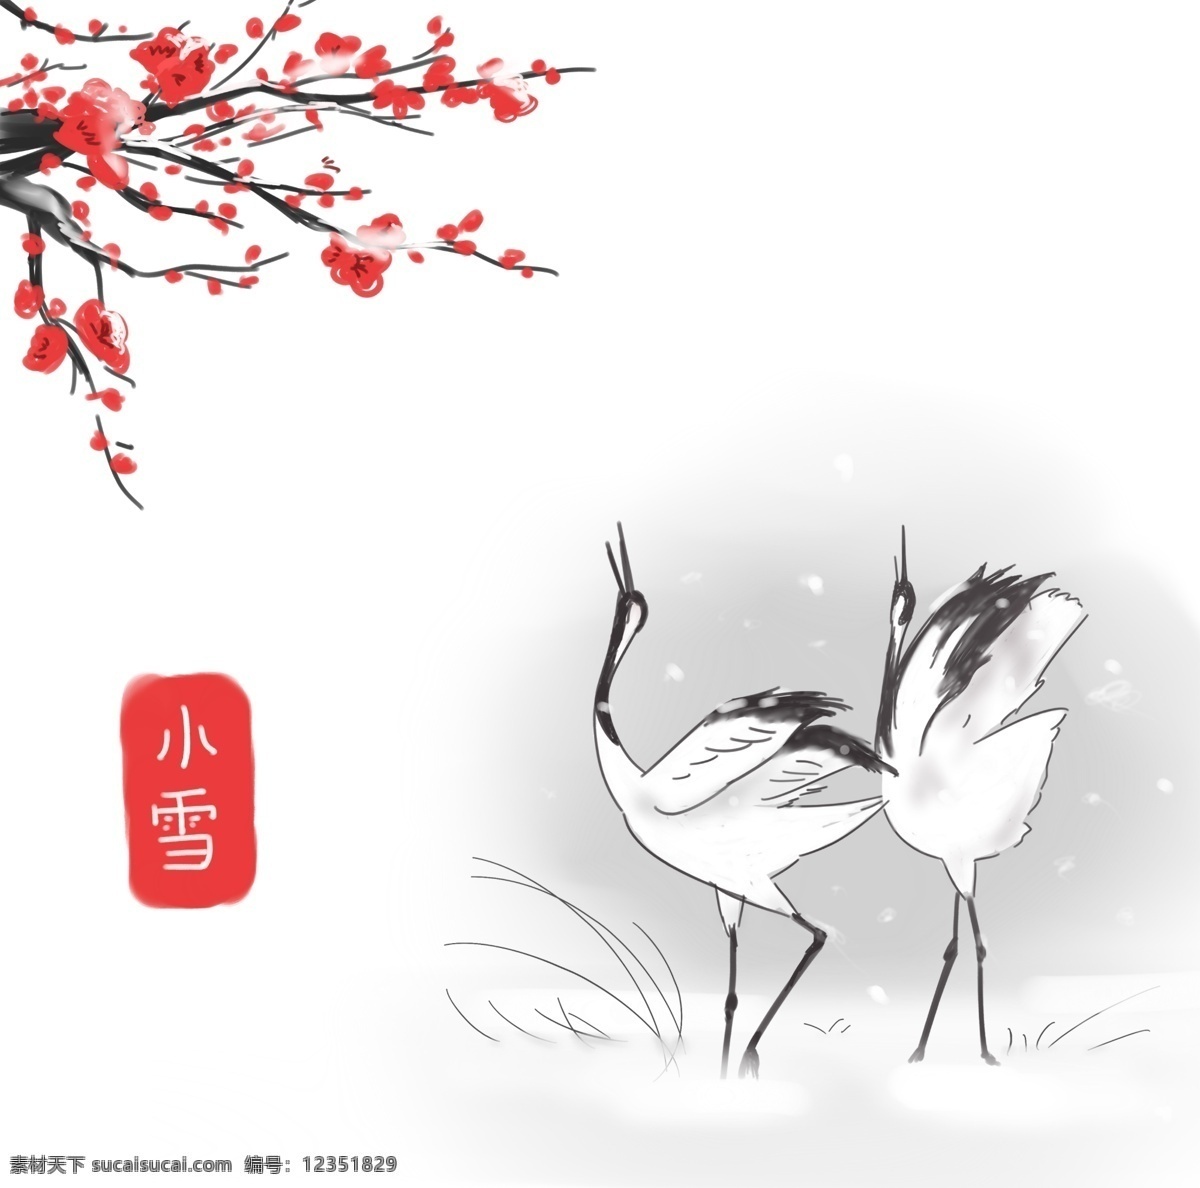 小雪 中国 传统 节气 插画 仙鹤 梅花 腊梅 寒梅 积雪 手绘 中国风 下雪 雪花 冬天 冬季